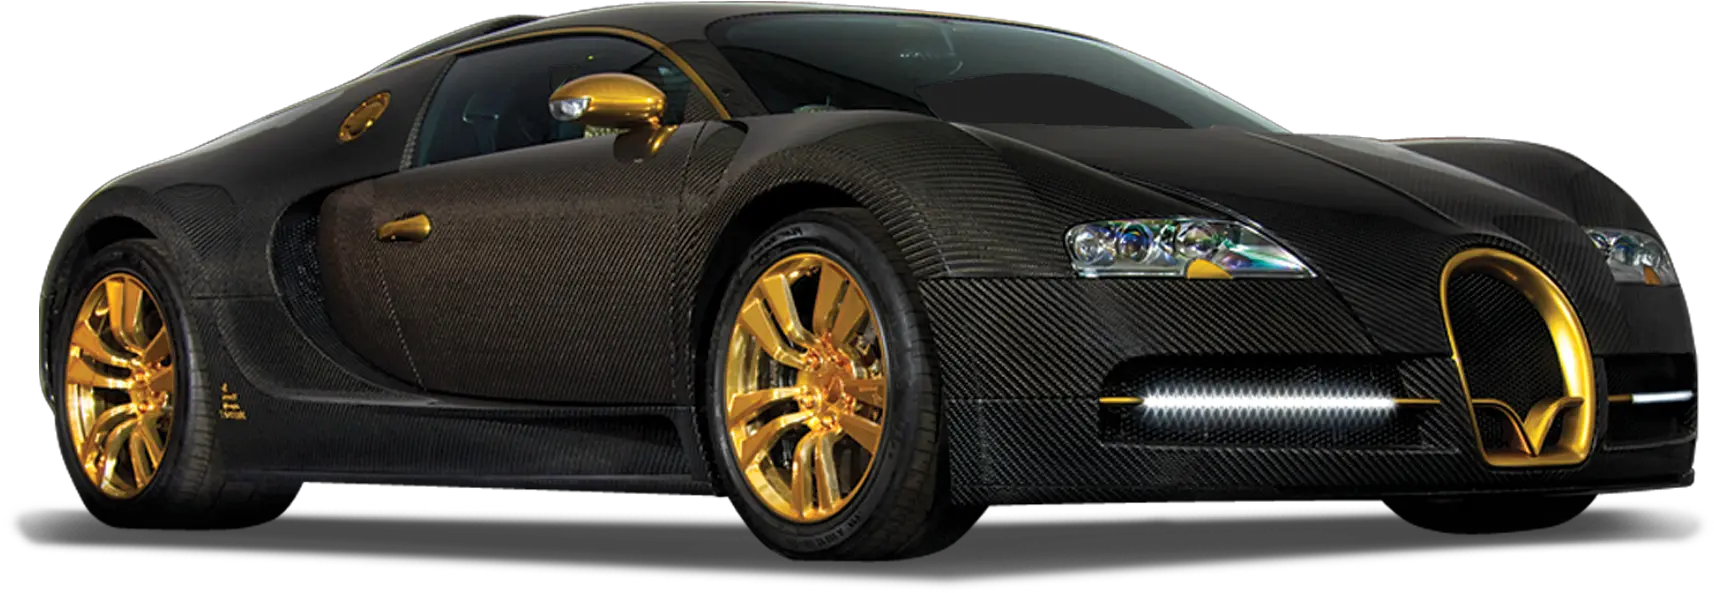 Download Free Bugatti Transparent Icon Favicon Freepngimg Bugatti Logo Png Linea Icon